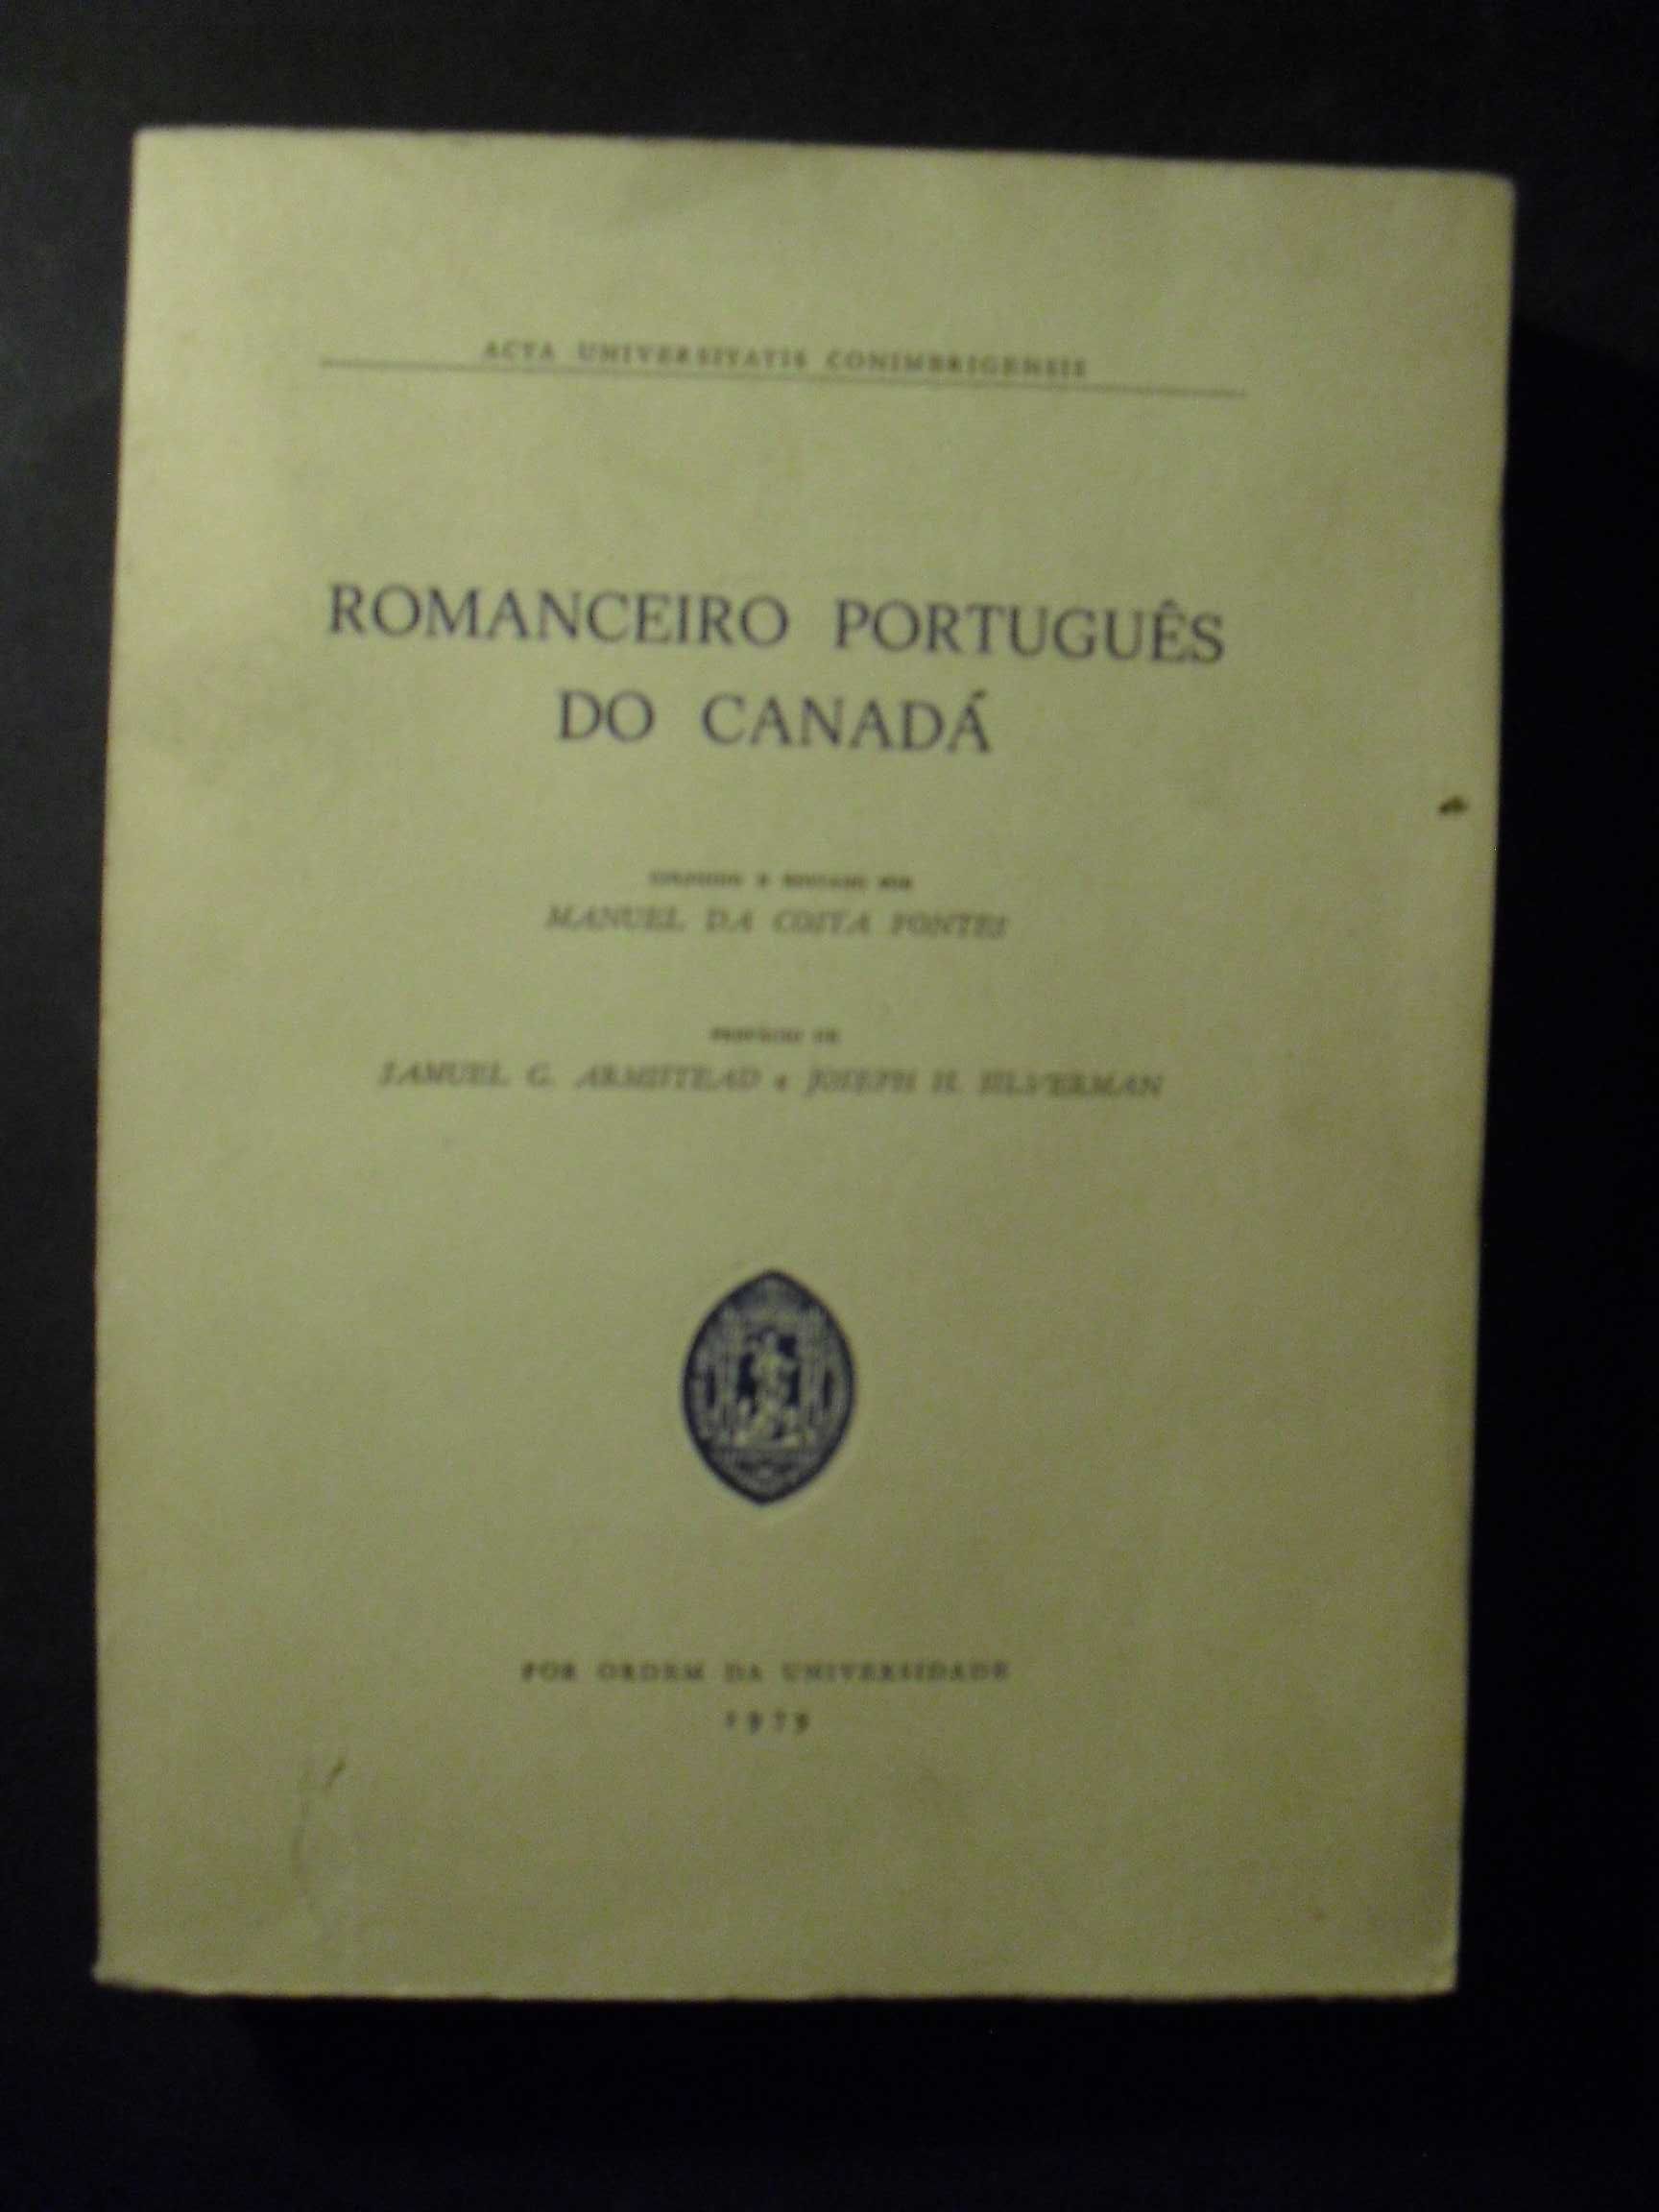 Fontes (Manuel da Costa,Coligido);Romanceiro Português do Canadá